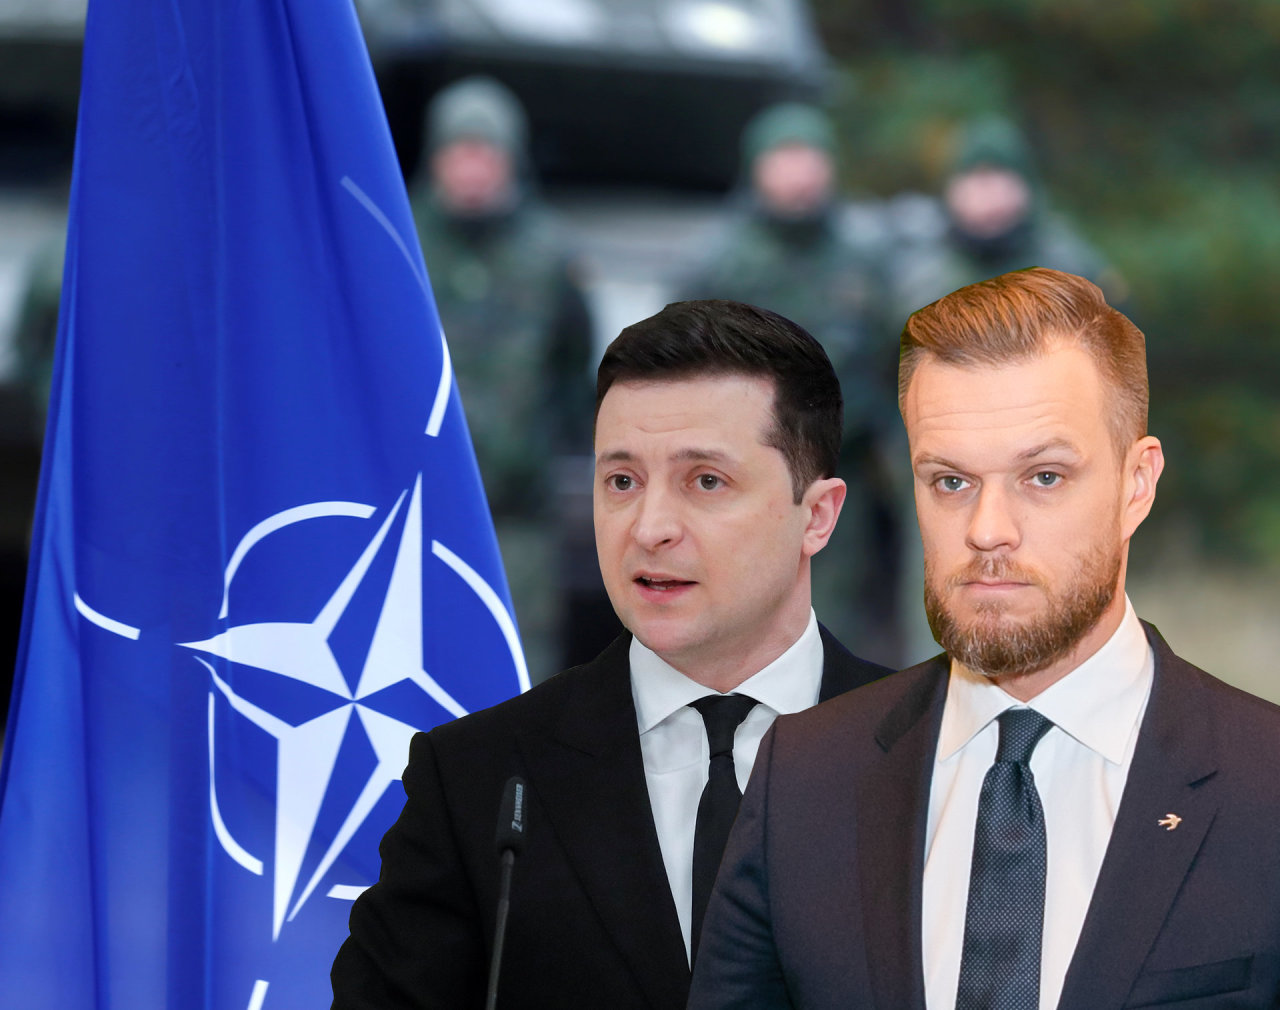 Lietuva kreipsis į NATO dėl narystės veiksmų plano Ukrainai: ar jis pagaliau bus pasiūlytas?